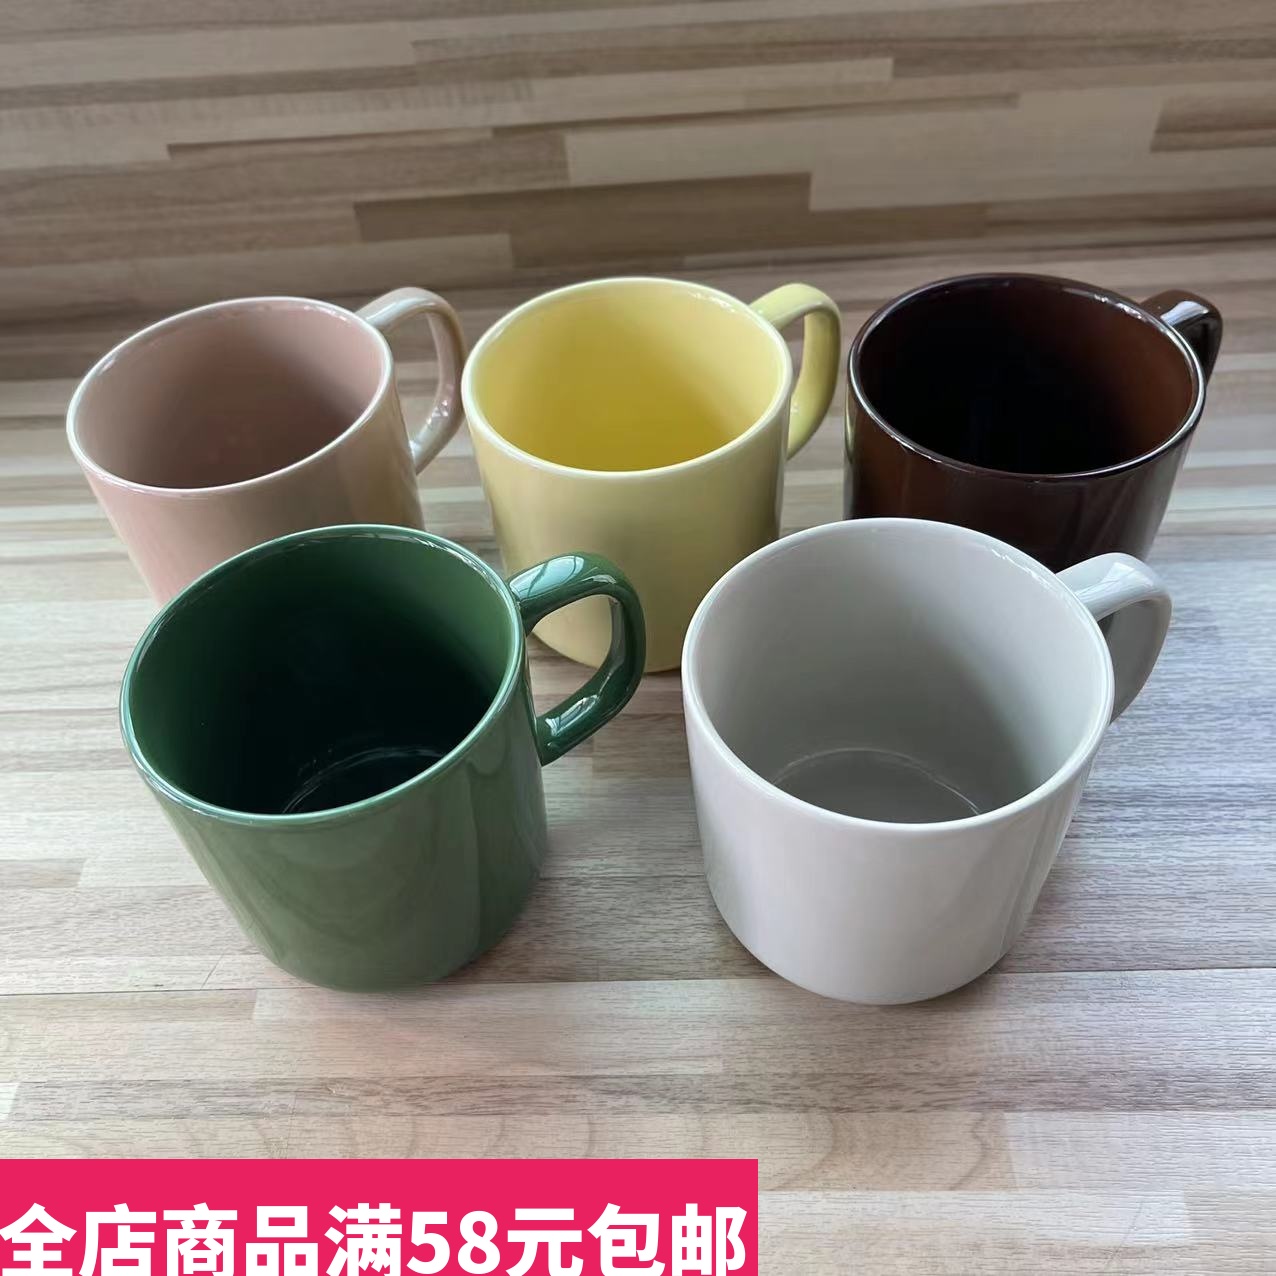 现货MUJI无印良品炻瓷马克杯水杯茶杯子270ml绿色红色陶瓷咖啡杯